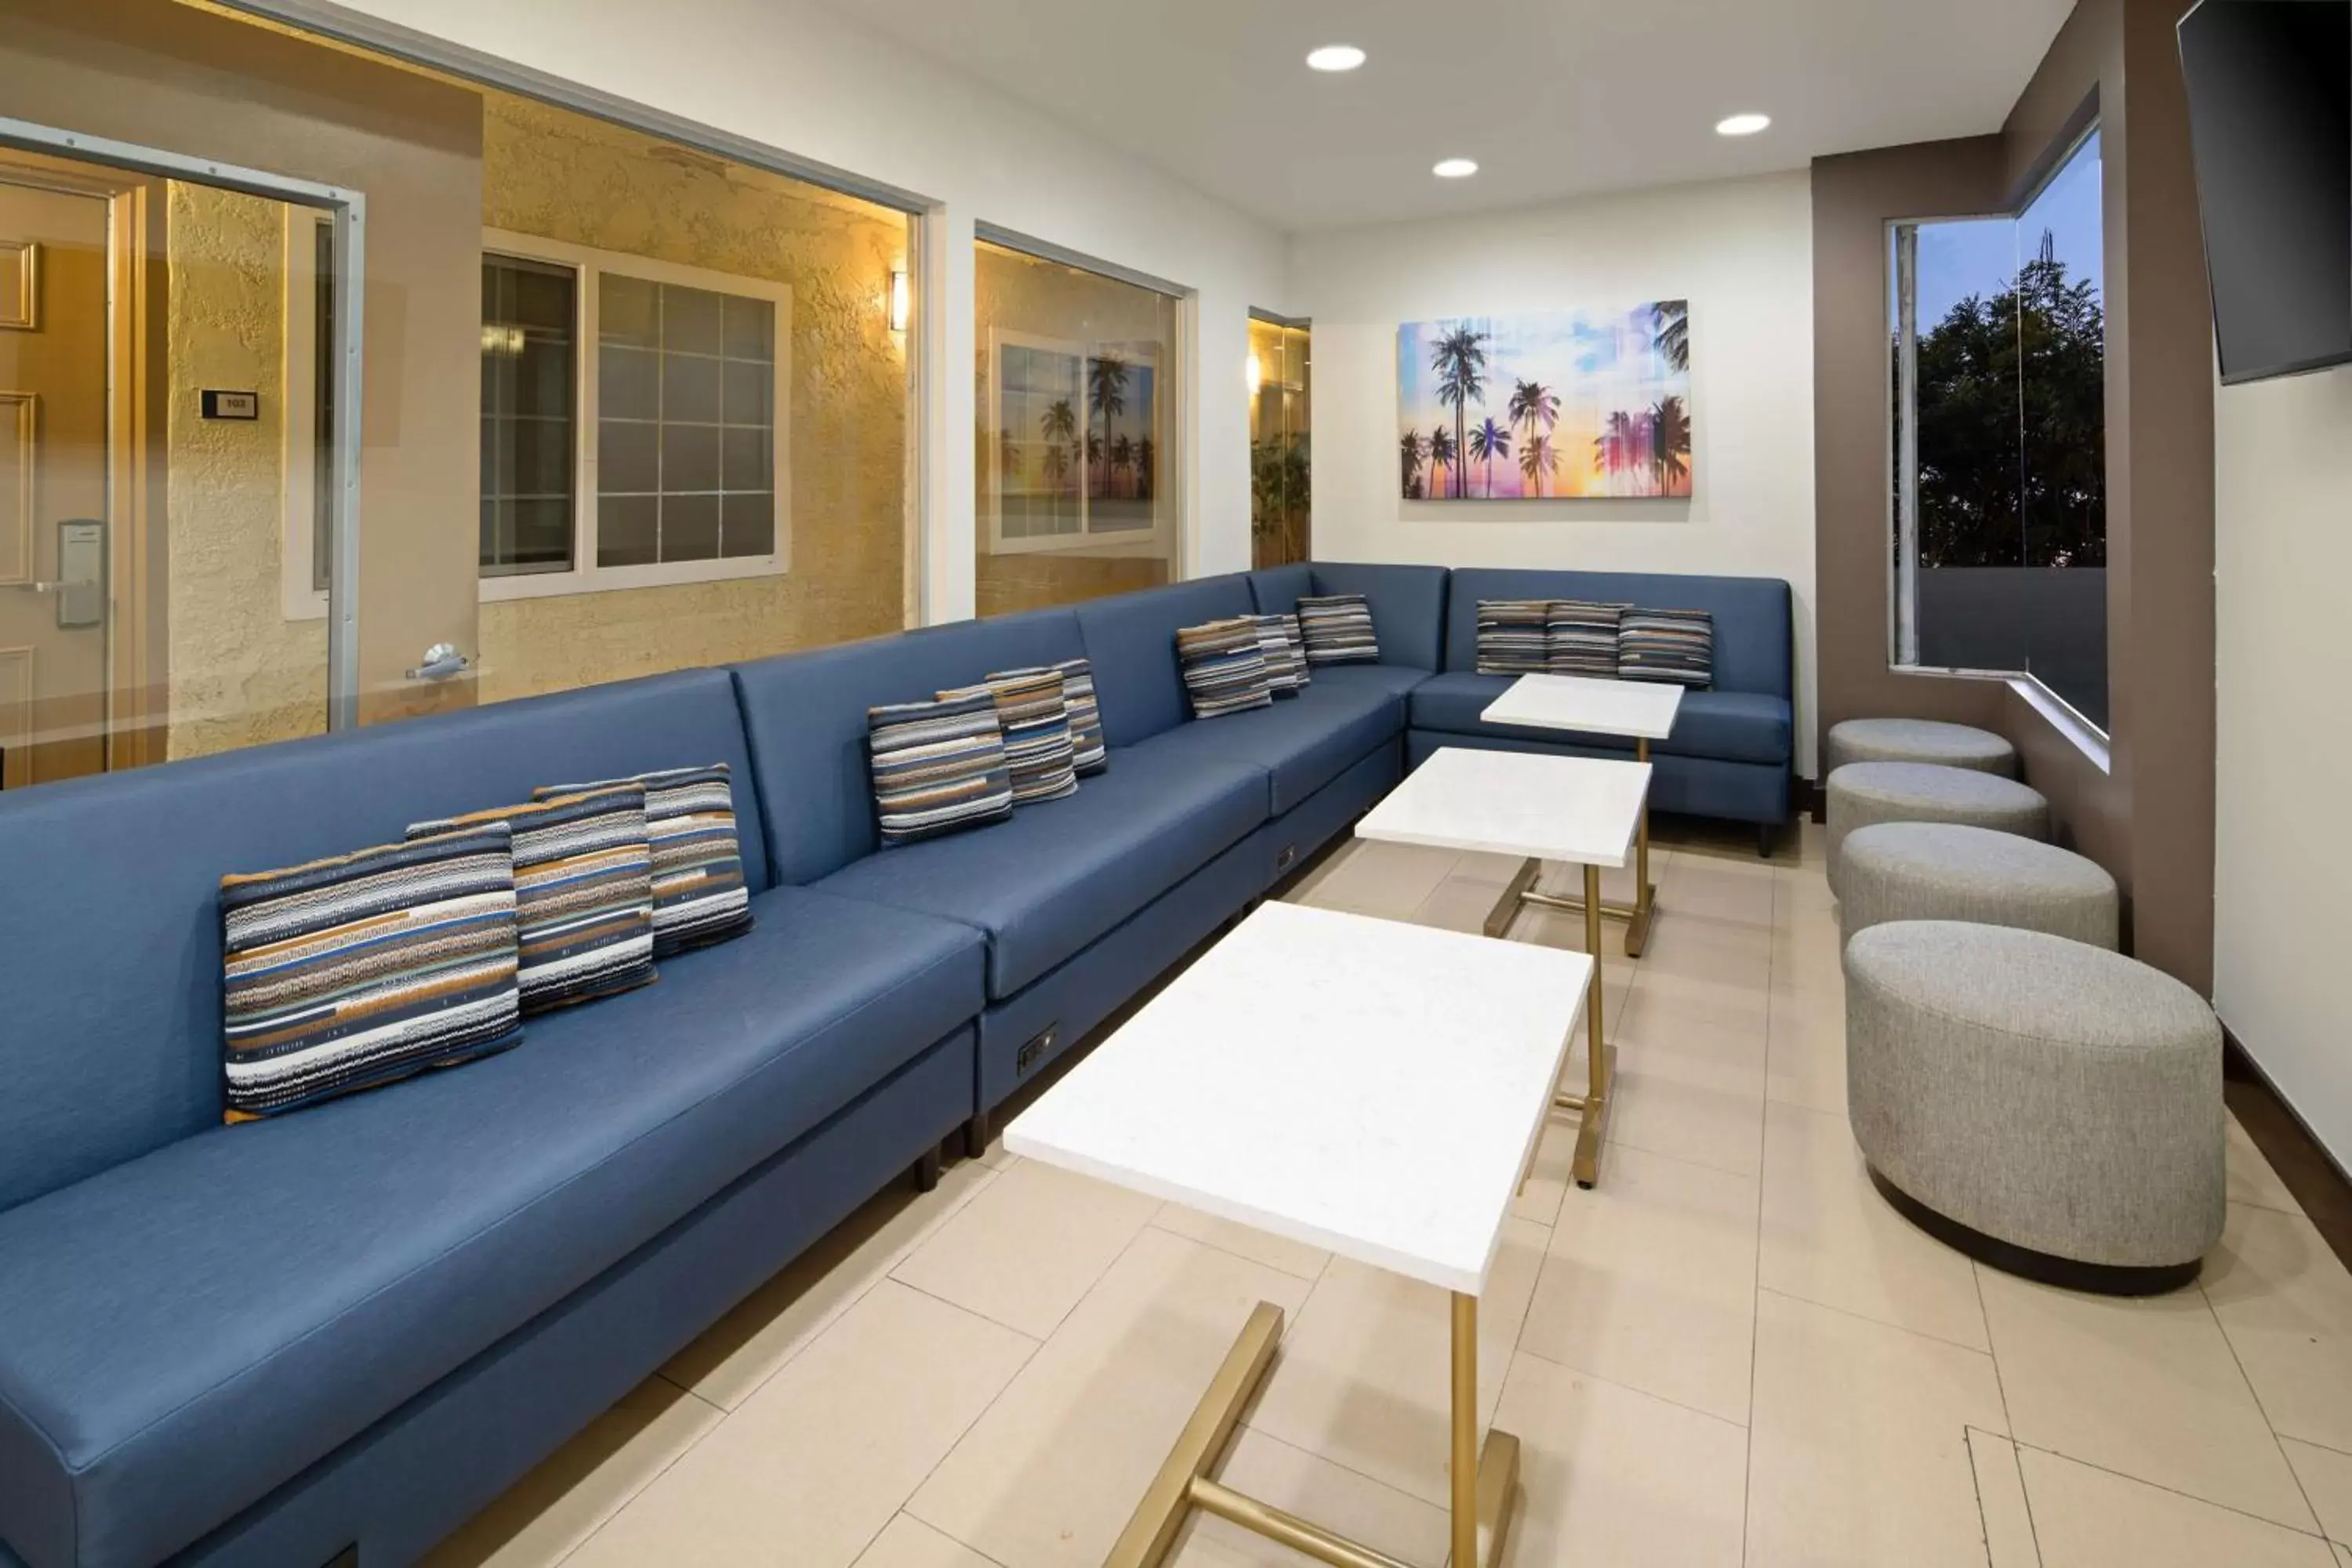 Lobby or reception, Seating Area in Best Western San Diego/Miramar Hotel